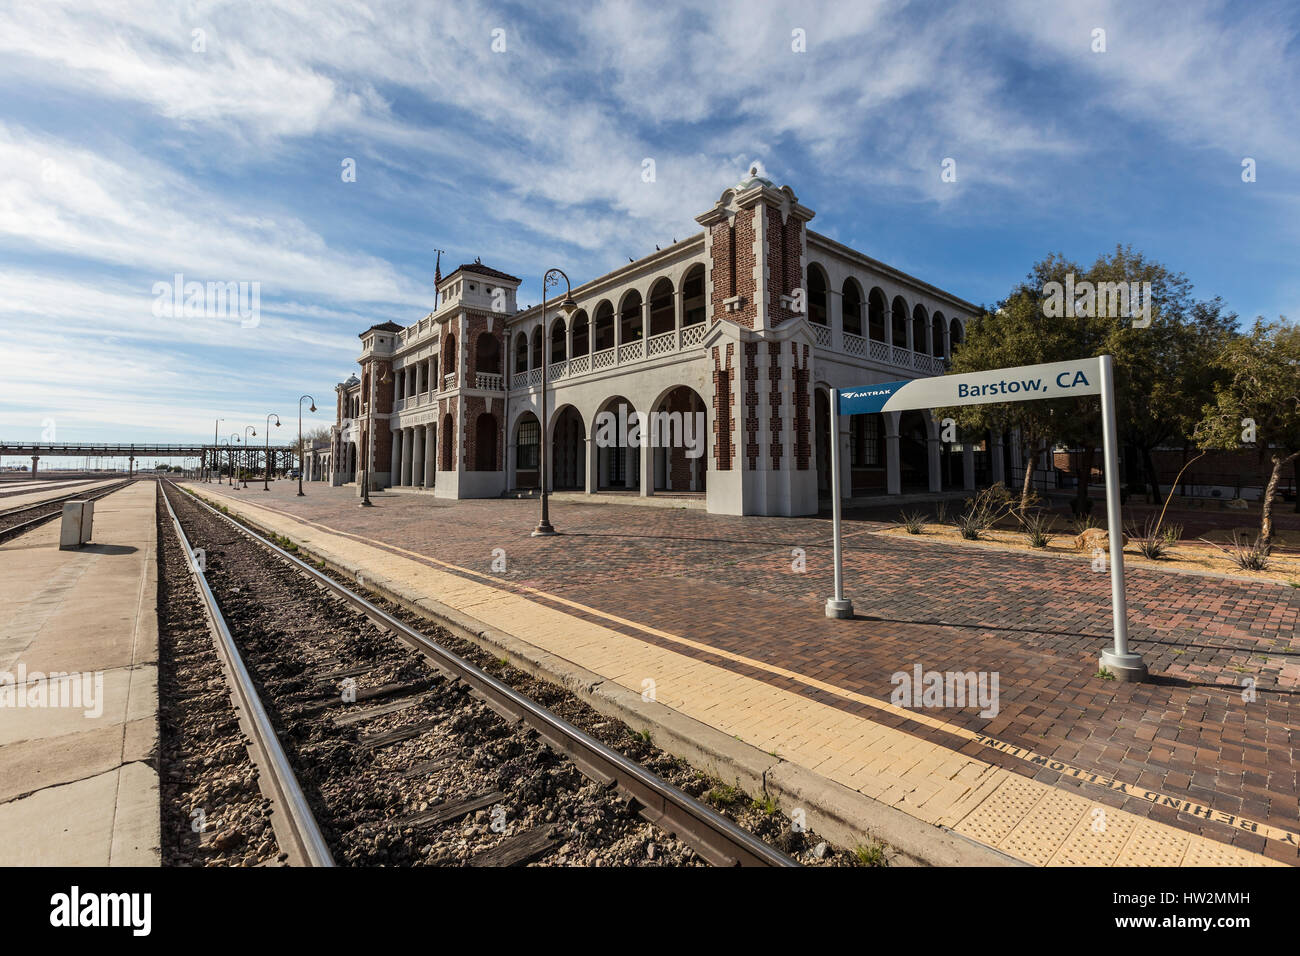 Barstow, Kalifornien, USA - 11. März 2017: Amtrak Bahn Haltestelle am historischen Bahnhof Barstow Harvey House in der Mojave-Wüste. Stockfoto